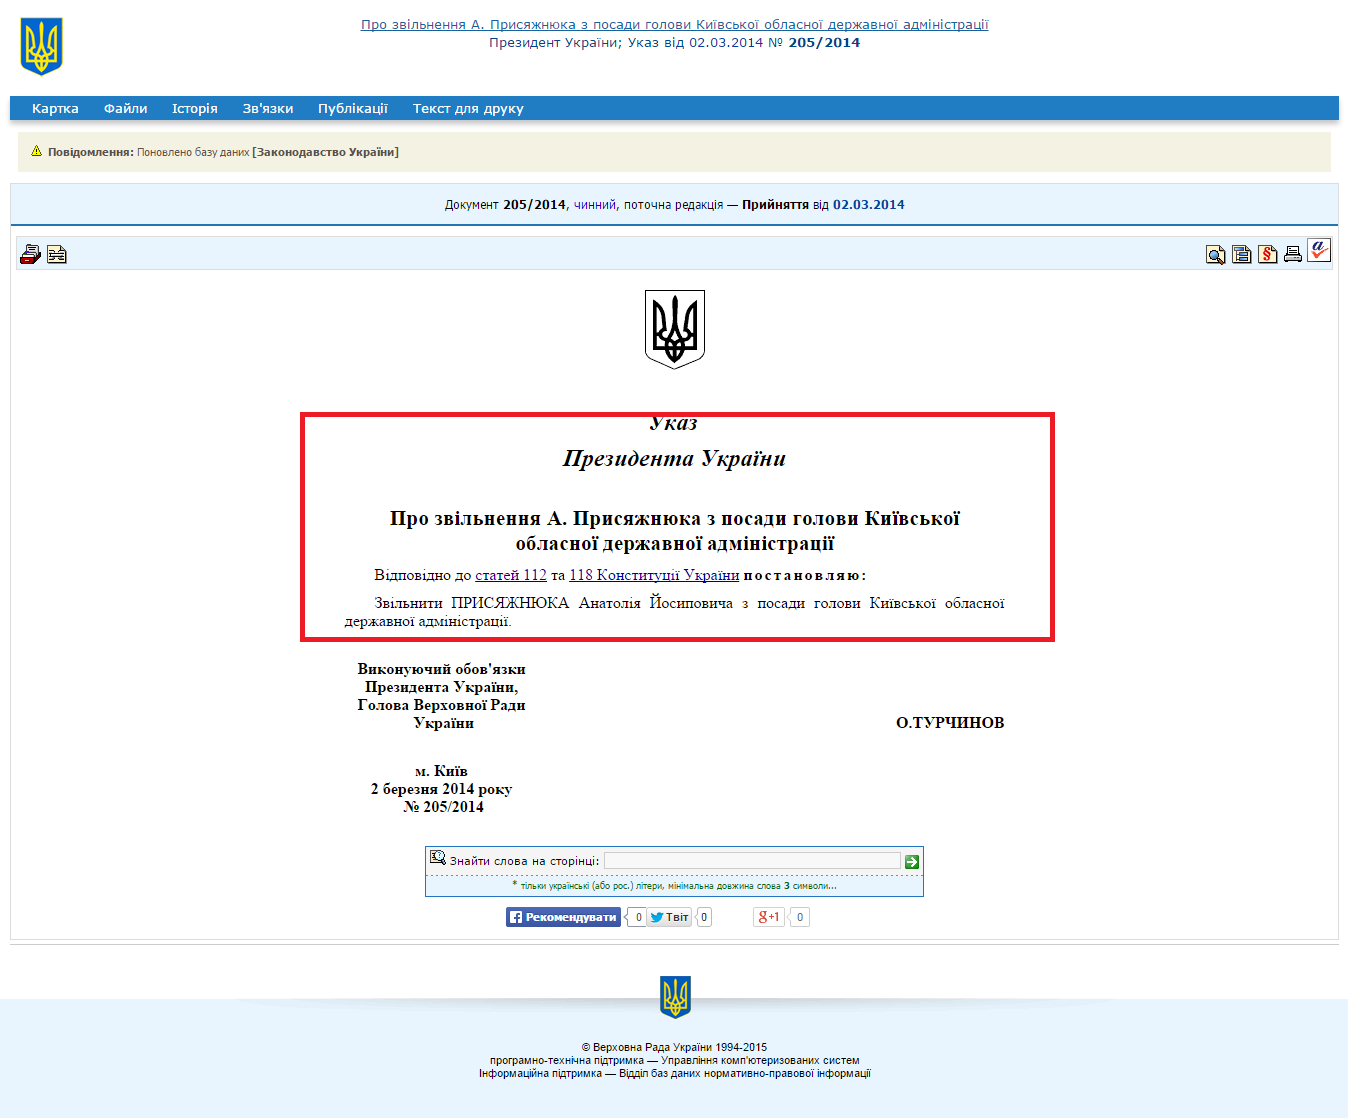 http://zakon1.rada.gov.ua/laws/show/205/2014